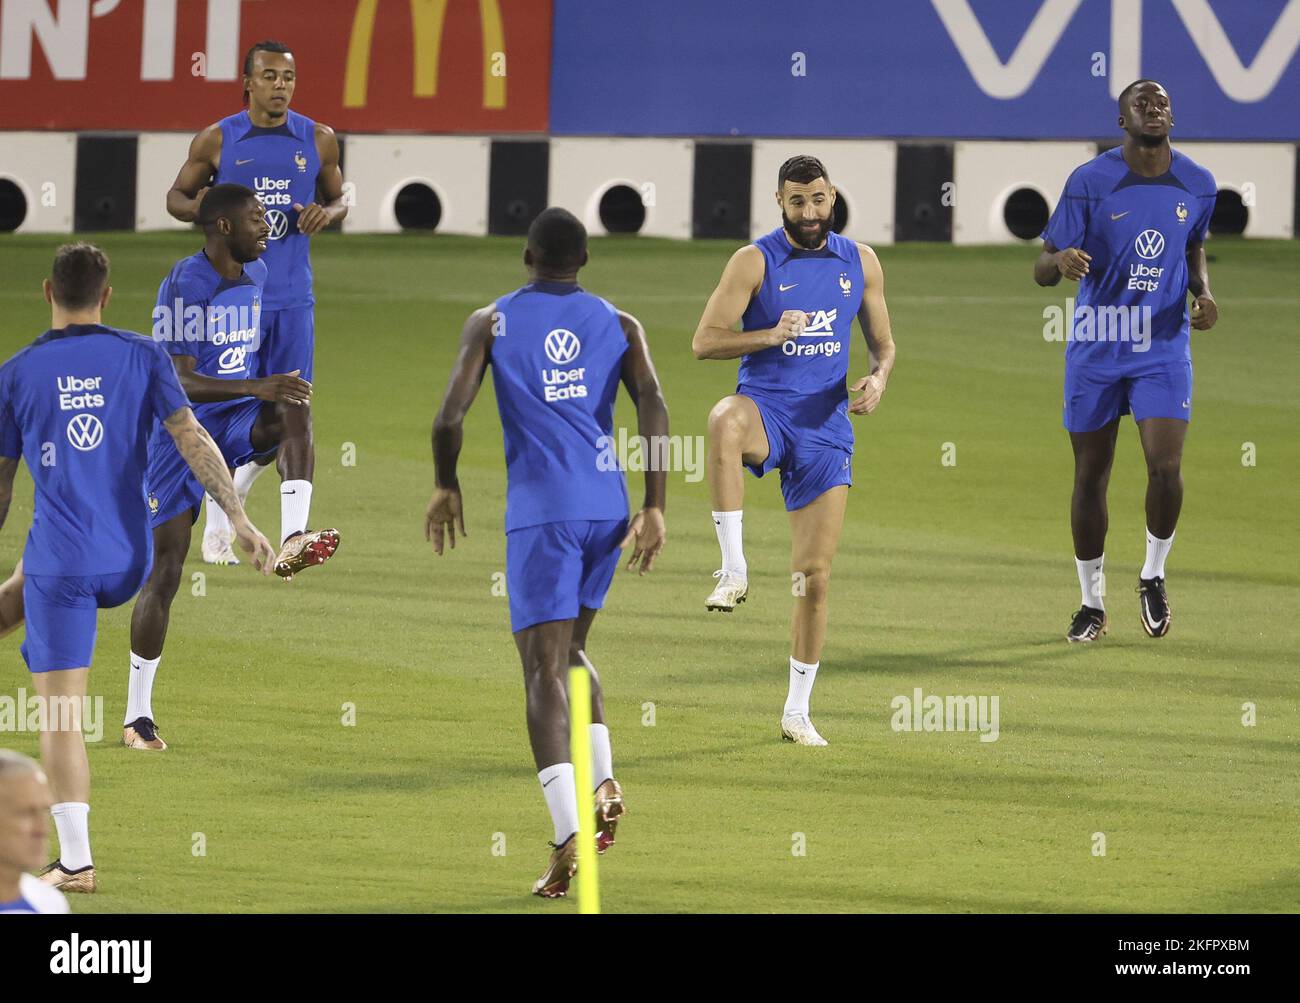 Doha, Katar - 19. November 2022, Karim Benzema aus Frankreich beim Training des französischen Teams vor der FIFA Fußball-Weltmeisterschaft 2022 am 19. November 2022 in Doha, Katar - Foto: Jean Catuffe/DPPI/LiveMedia Stockfoto